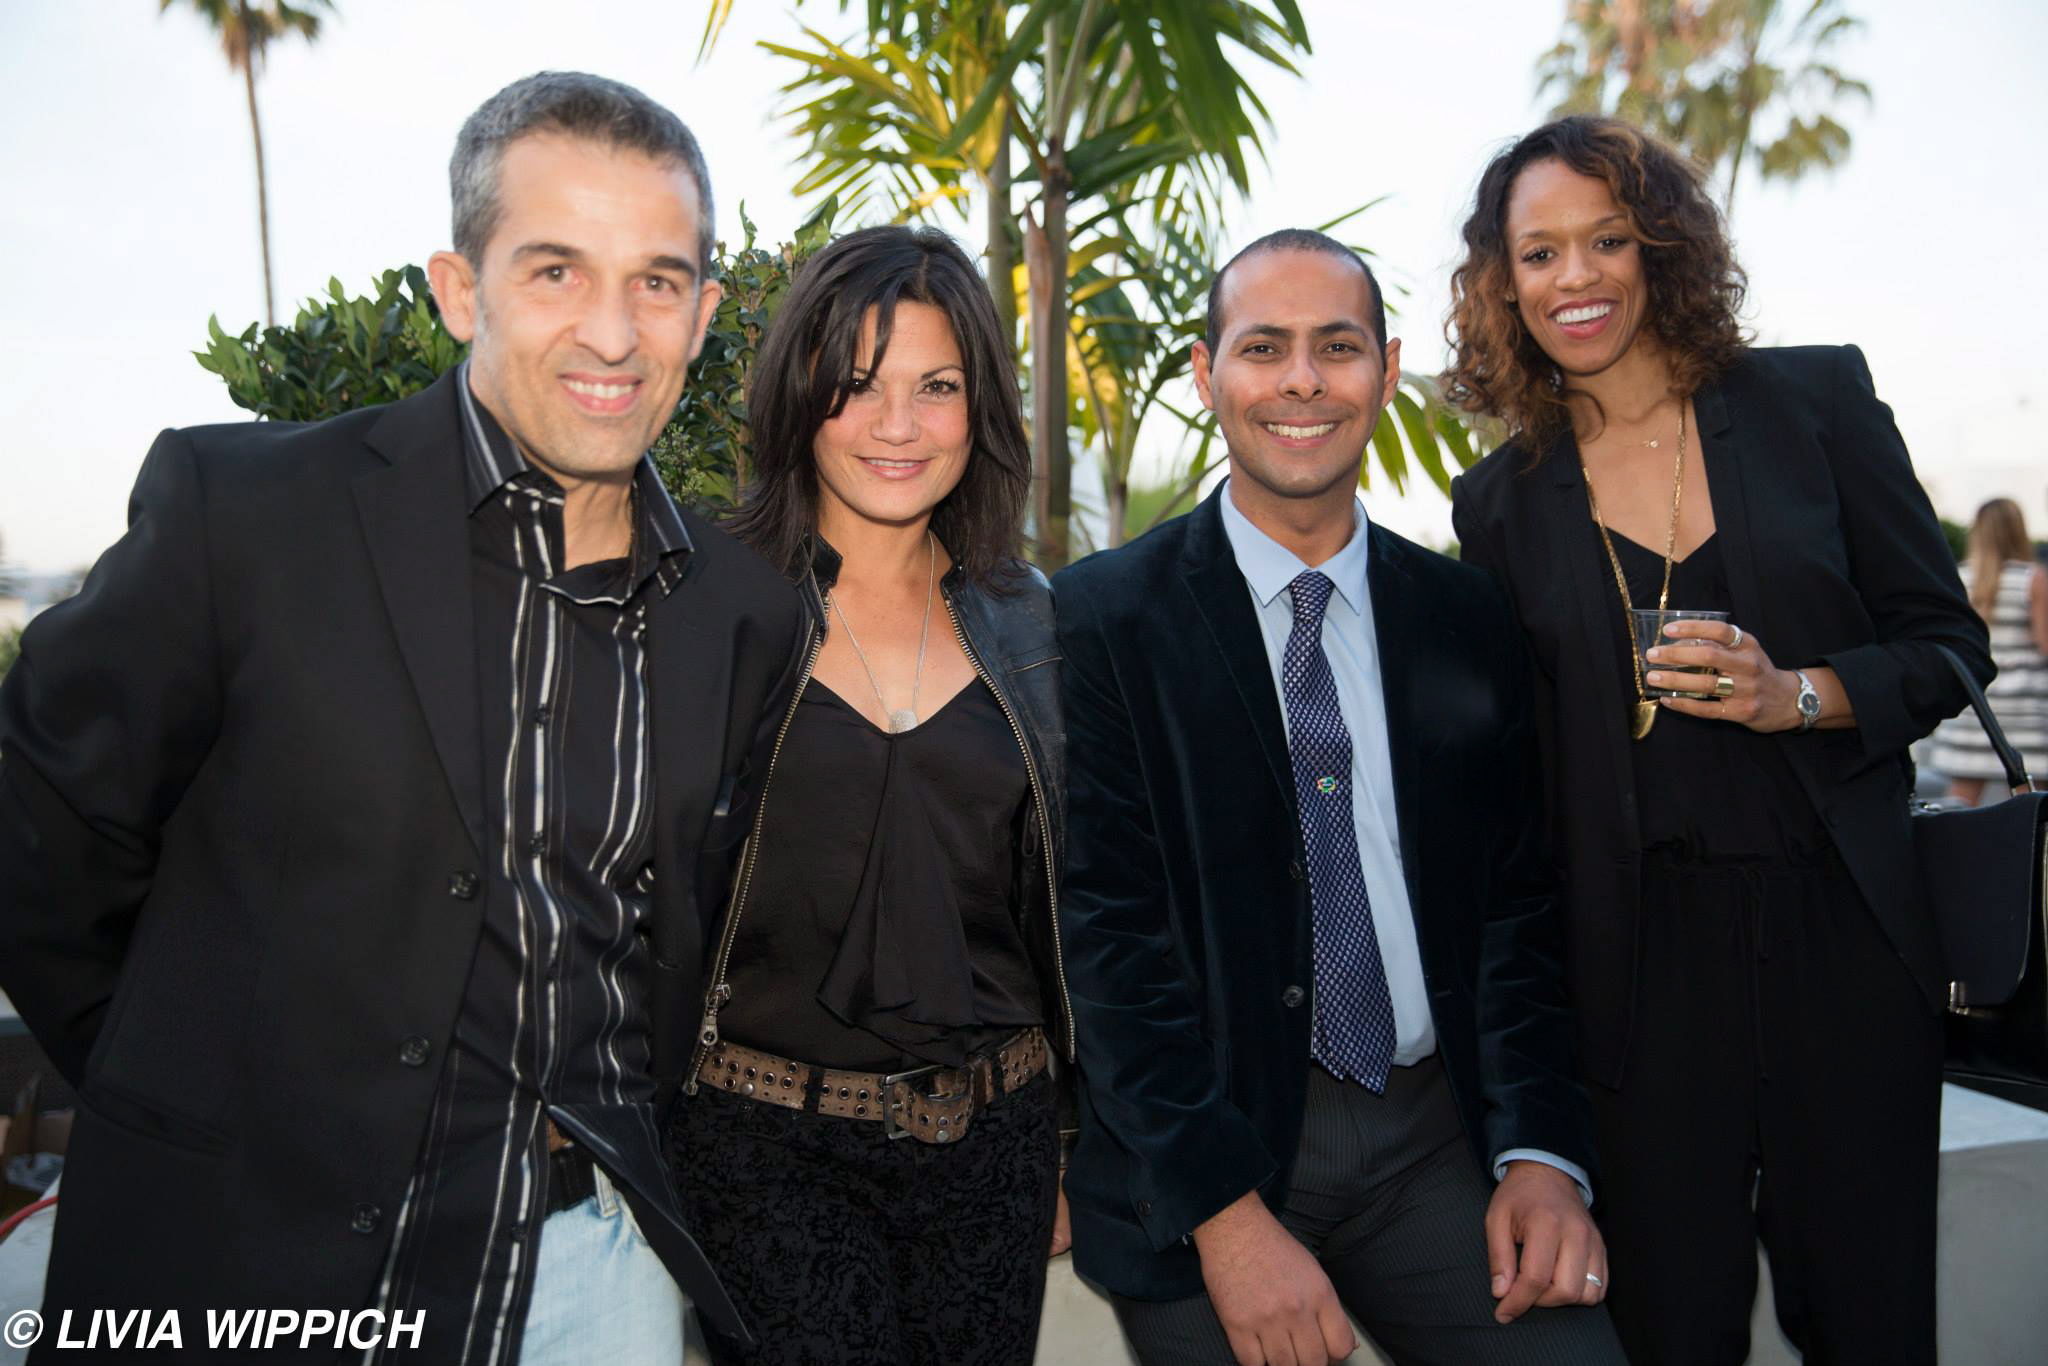 Marco Dutra, Leimomi Coloretti, Fabricio Correa, Valery Edwards. AKA, Beverly Hills, CA. Mixer for the 2014 Los Angeles Brazilian Film Festival.